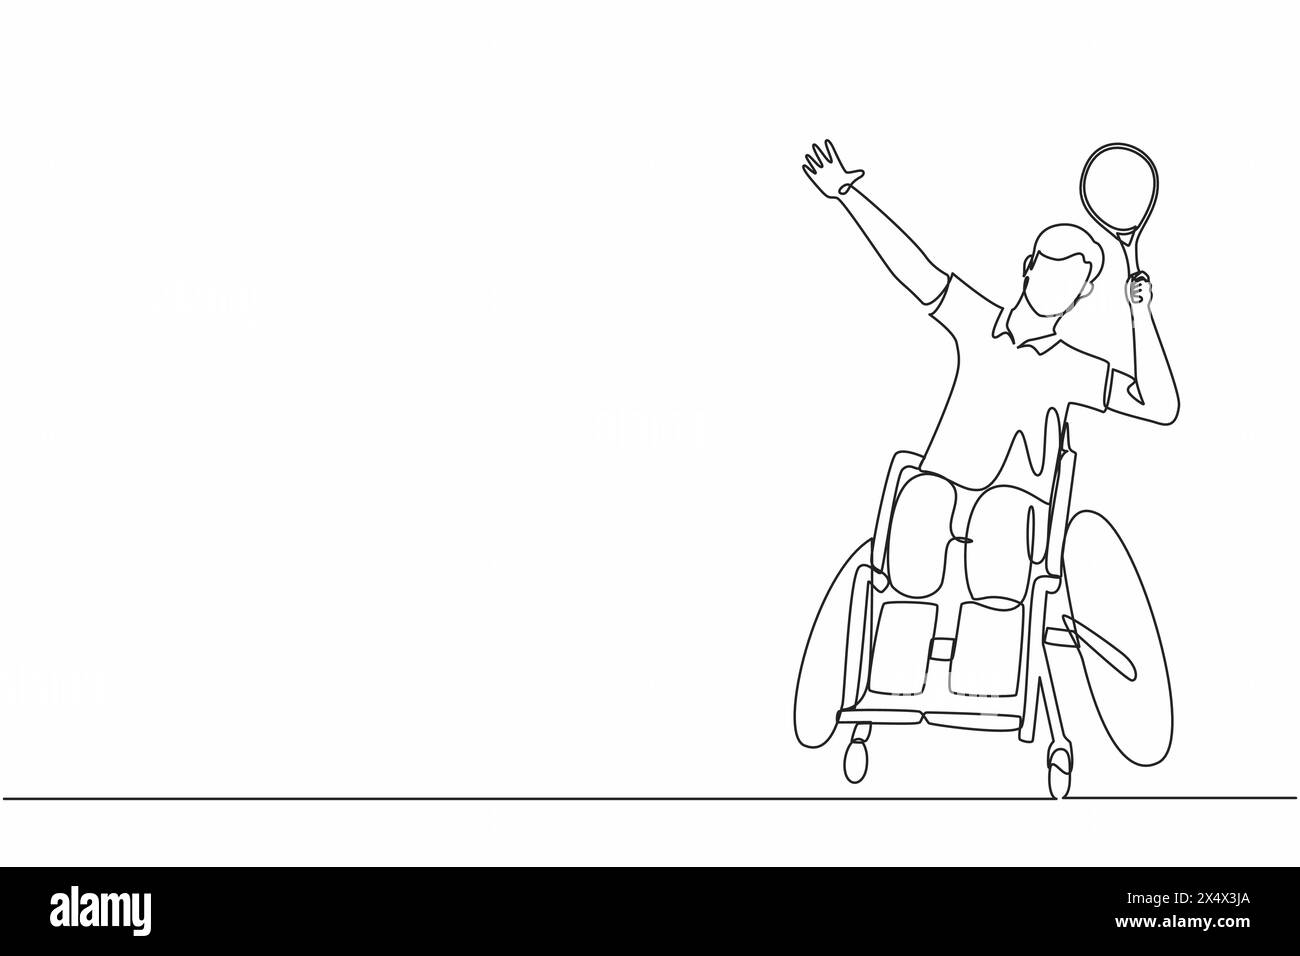 Joueur de badminton dessinant une seule ligne continue assis sur un fauteuil roulant avec une posture de smash. Les sportifs handicapés portent un uniforme, jeune homme amputé sport compe Illustration de Vecteur